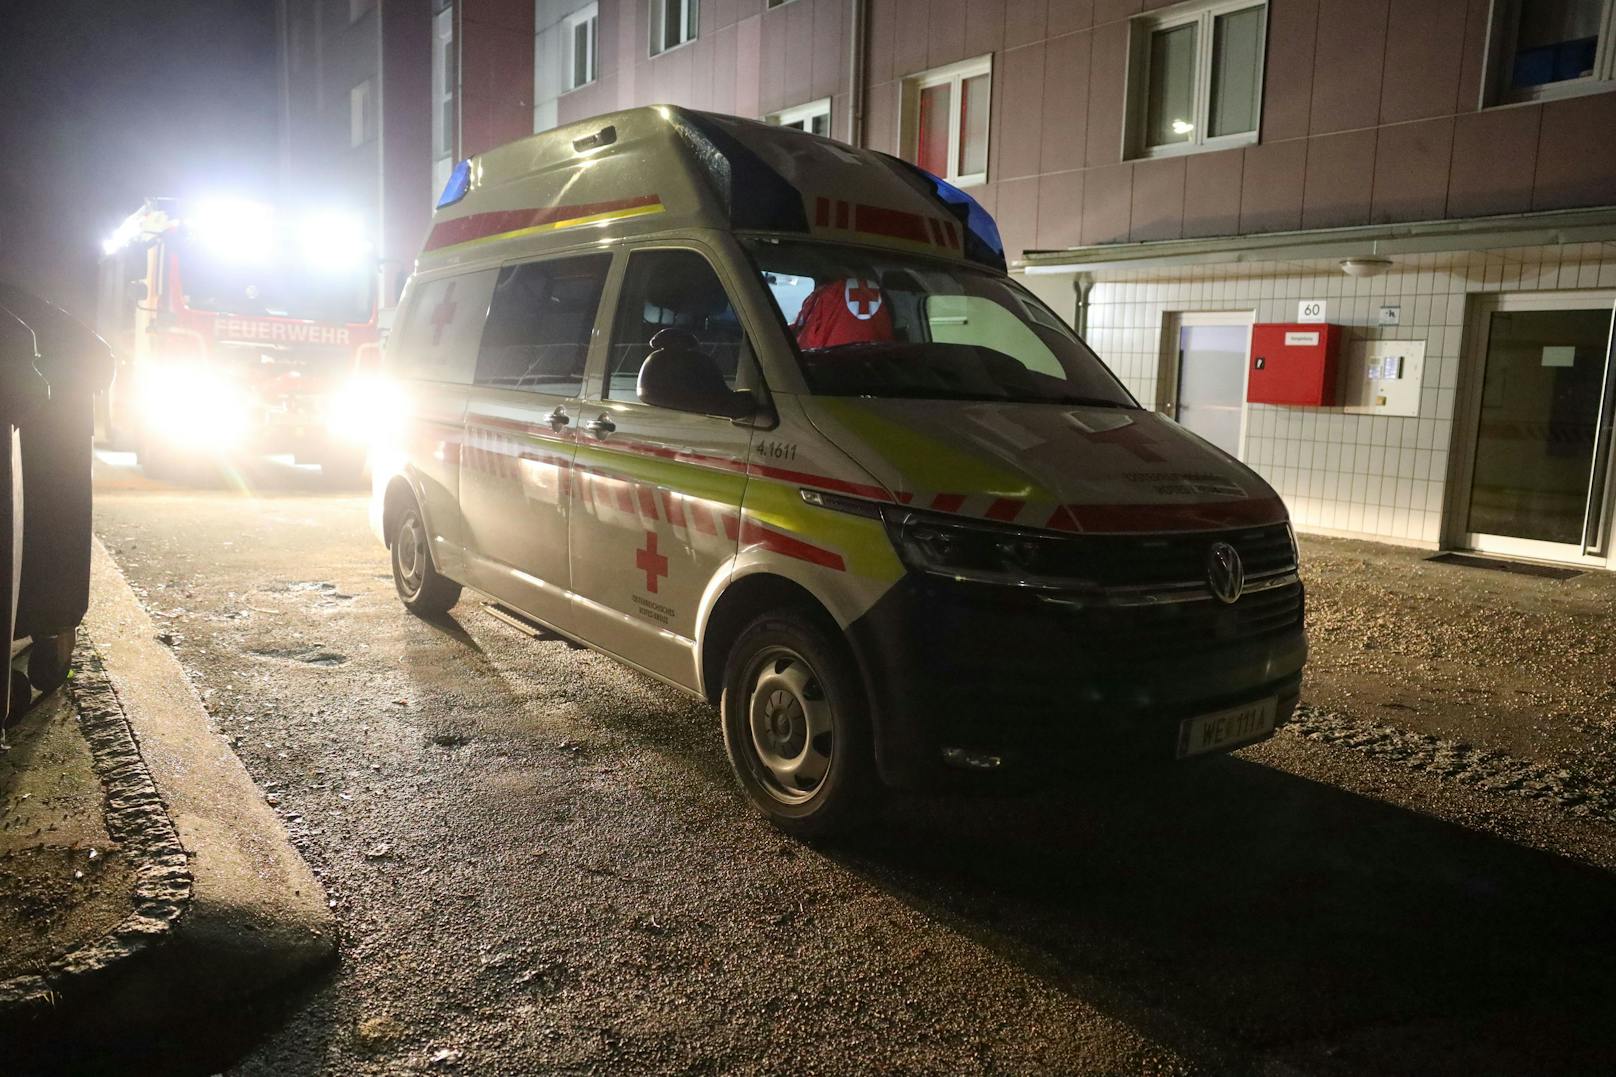 Feuerwehr, Rettungsdienst und Polizei standen in der Nacht auf Montag bei einem Rettungseinsatz in einer Mehrparteienhauswohnung in Wels-Vogelweide im Einsatz.